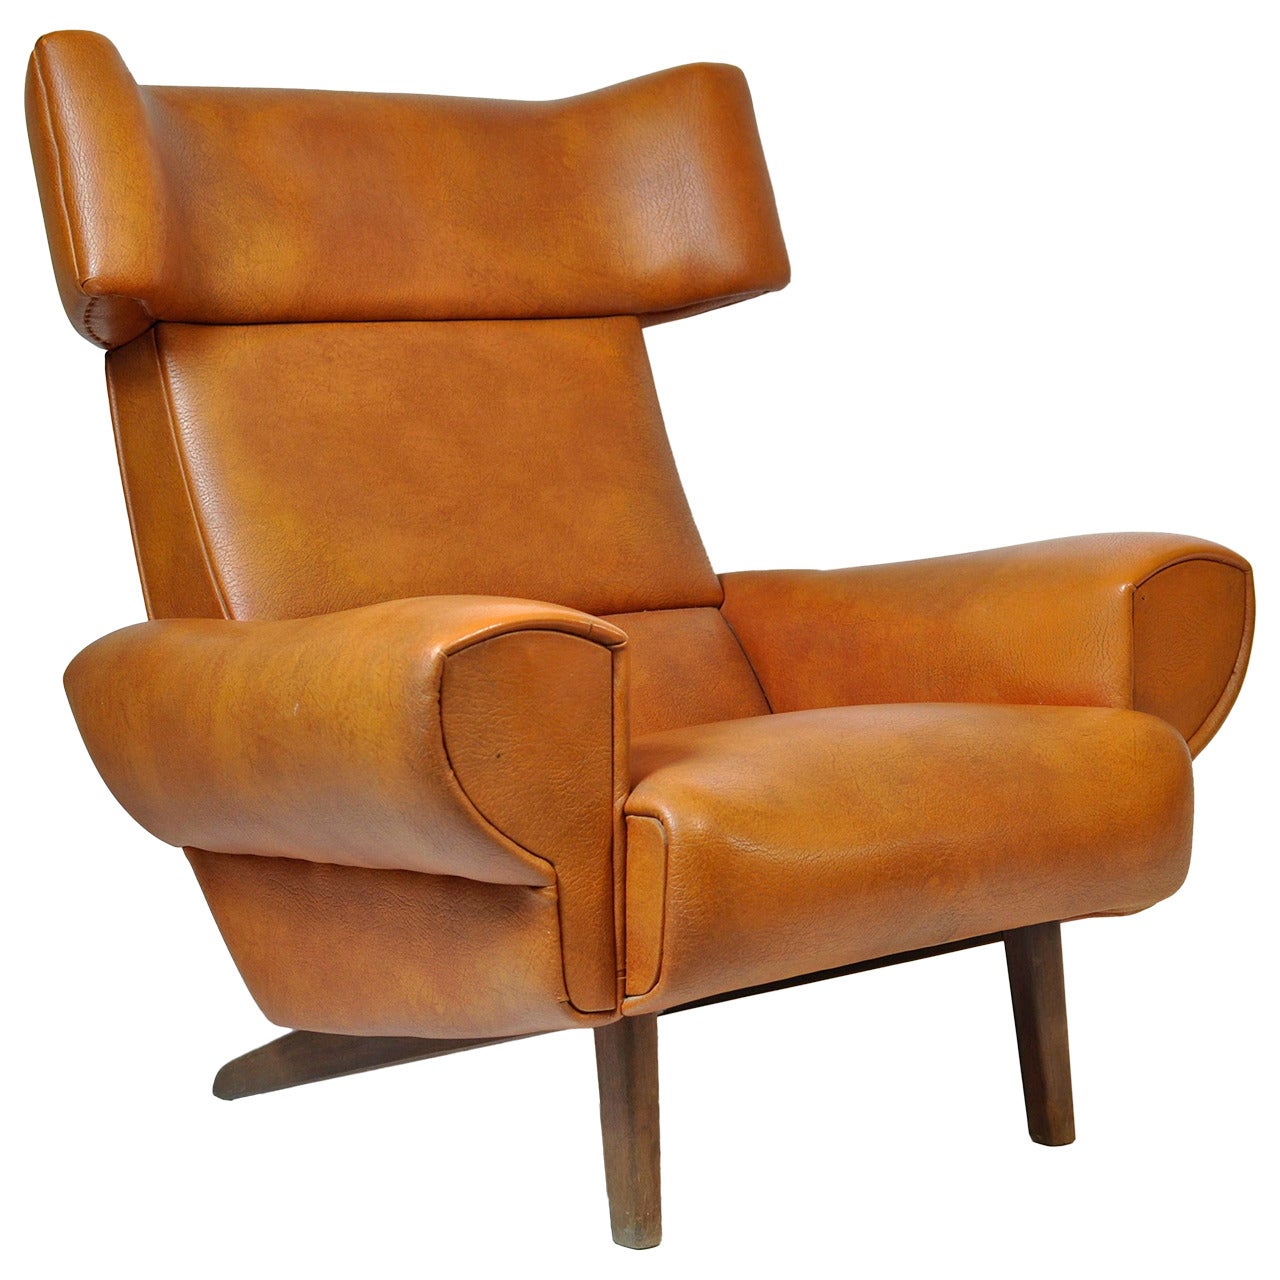 1970s Danish Lounge Chair